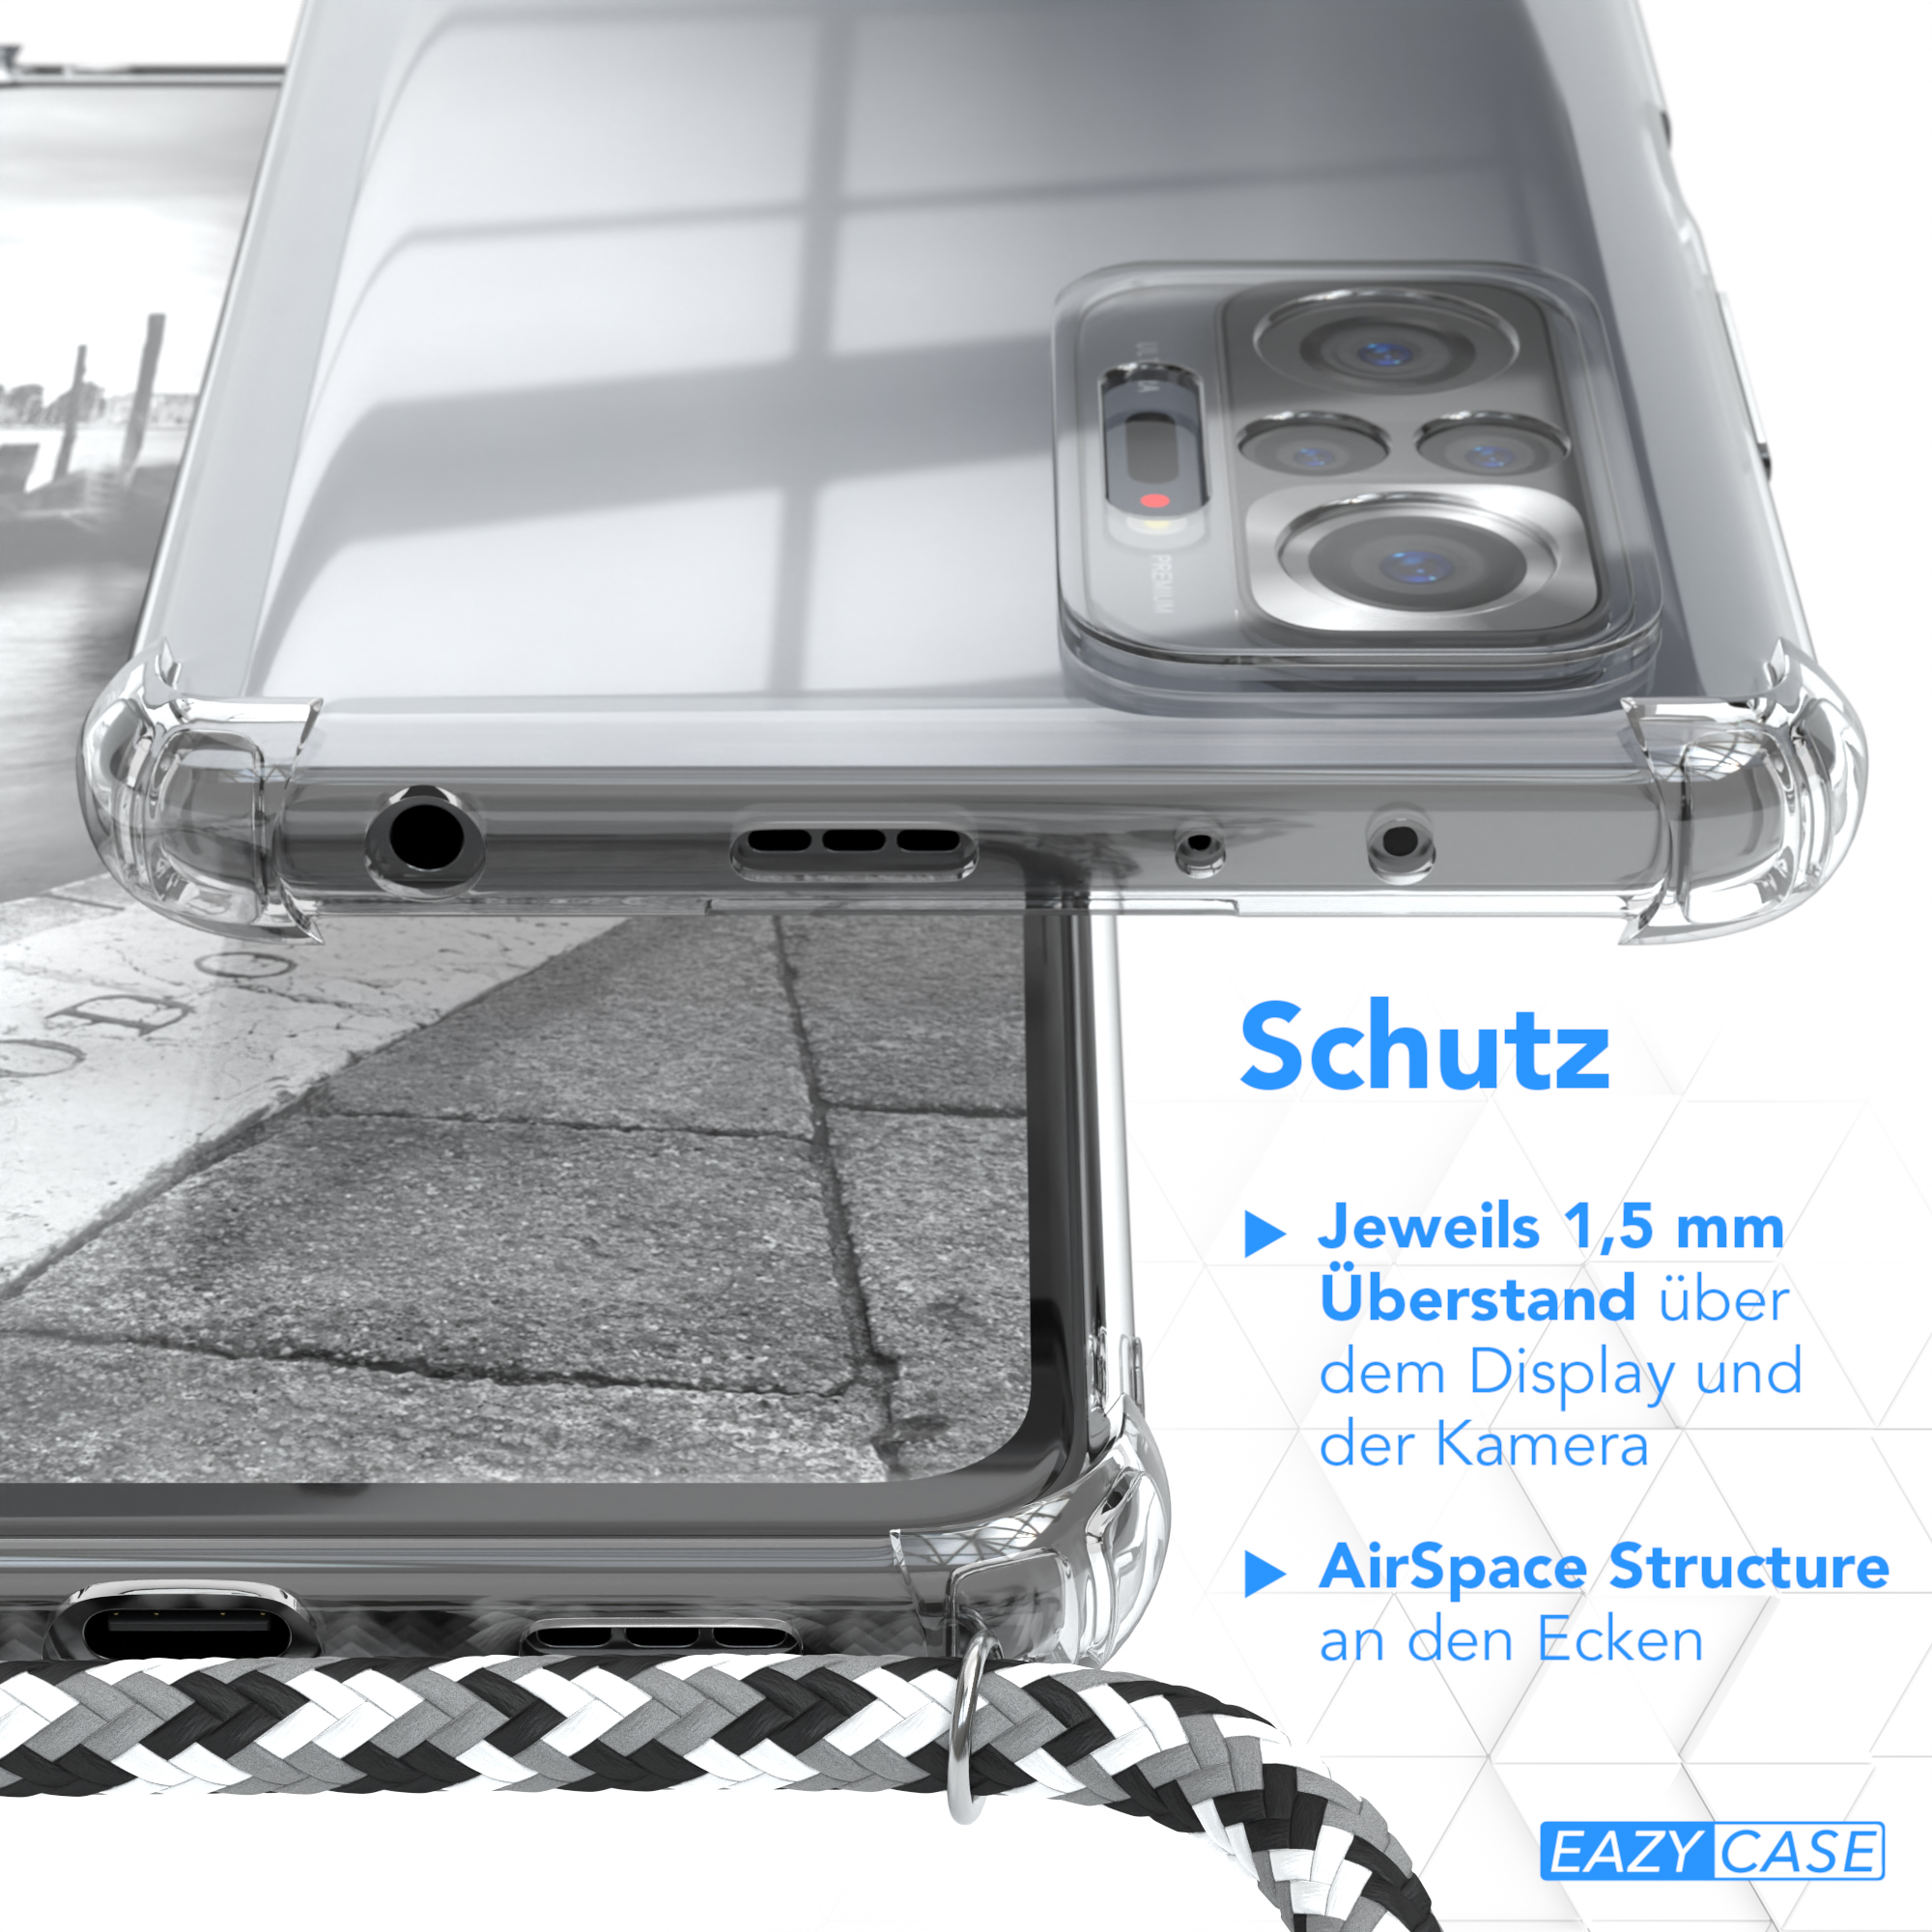 EAZY CASE Clear Cover Clips mit Schwarz Note Camouflage / Redmi Pro, Xiaomi, Umhängeband, Silber Umhängetasche, 10